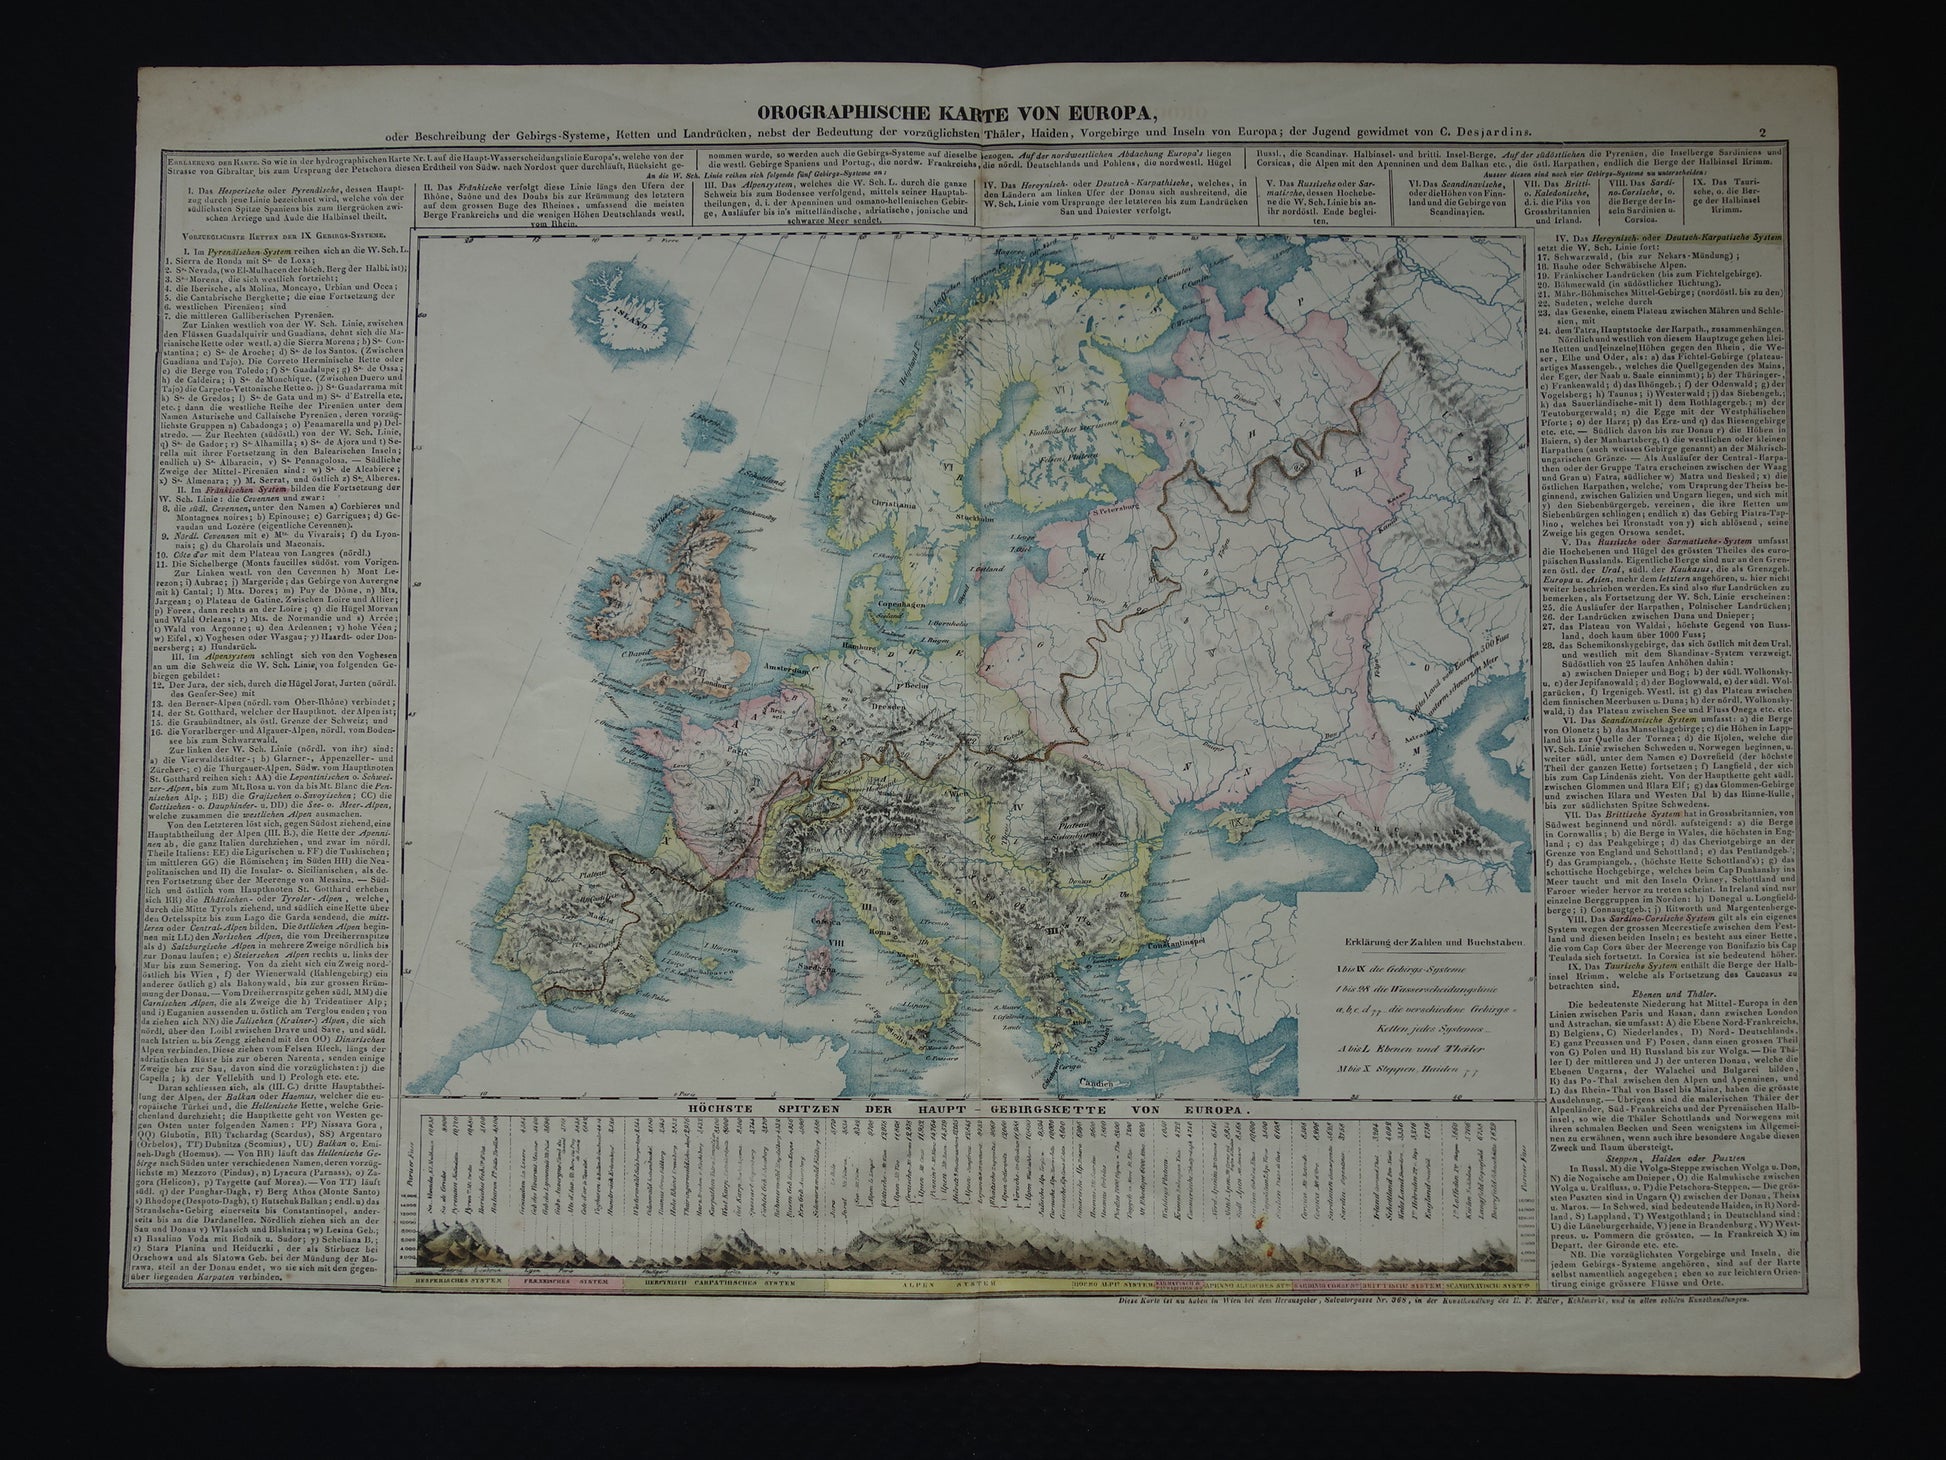 Orographische karte von Europa - C. Desjardins